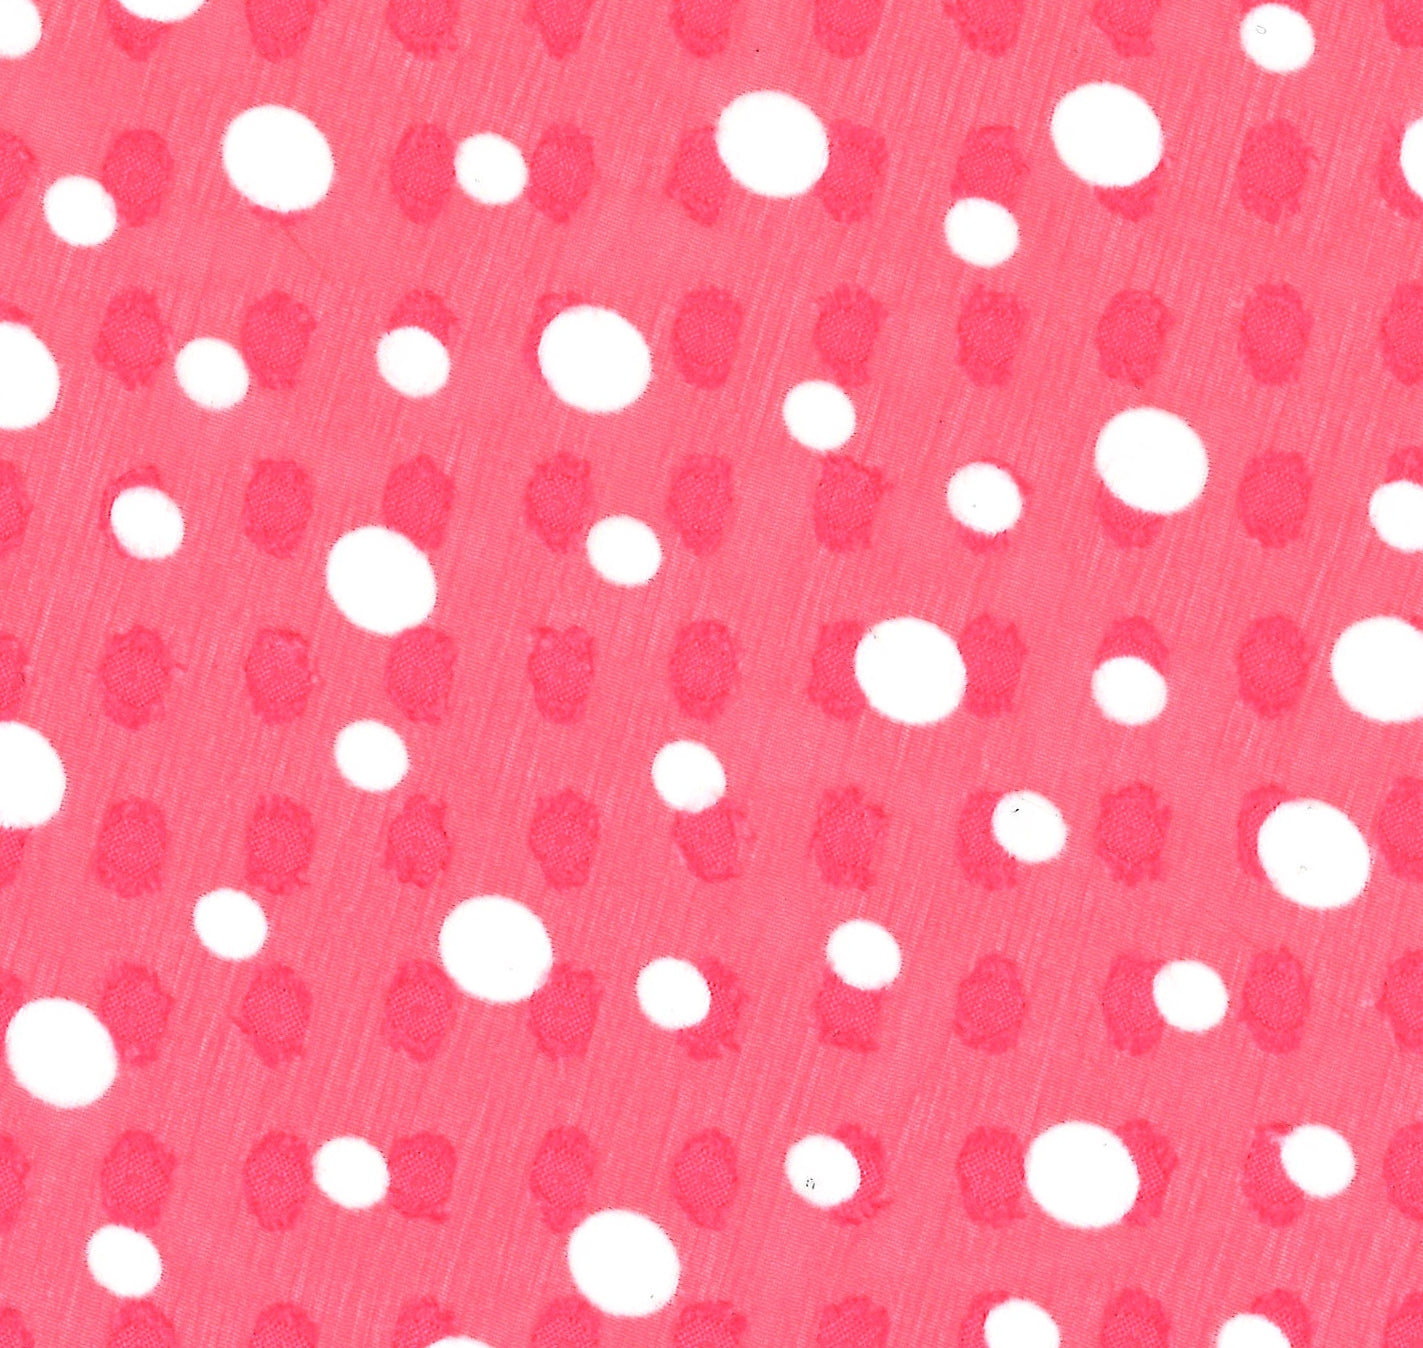 87027-03 Hot Pink Polyester Chiffon White Spot Jacquard Print 100% chiffon jacquard pink polyester print spots woven Jacquard, Chiffon, Print - knit fabric - woven fabric - fabric company - fabric wholesale - fabric b2b - fabric factory - high quality fabric - hong kong fabric - fabric hk - acetate fabric - cotton fabric - linen fabric - metallic fabric - nylon fabric - polyester fabric - spandex fabric - chun wing hing - cwh hk - fabric worldwide ship - 針織布 - 梳織布 - 布料公司- 布料批發 - 香港布料 - 秦榮興